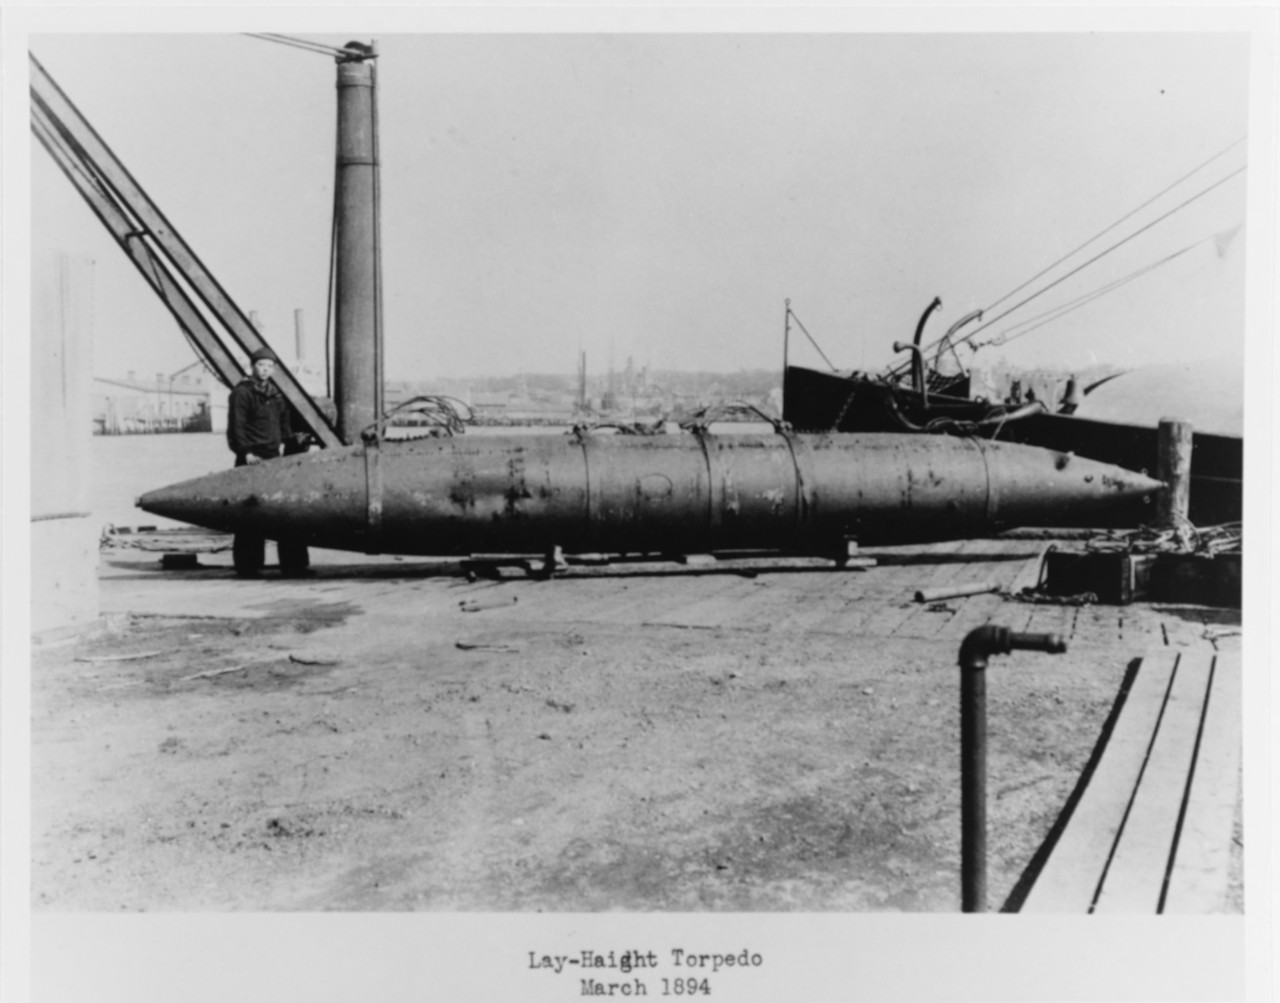 Lay-Haight Torpedo